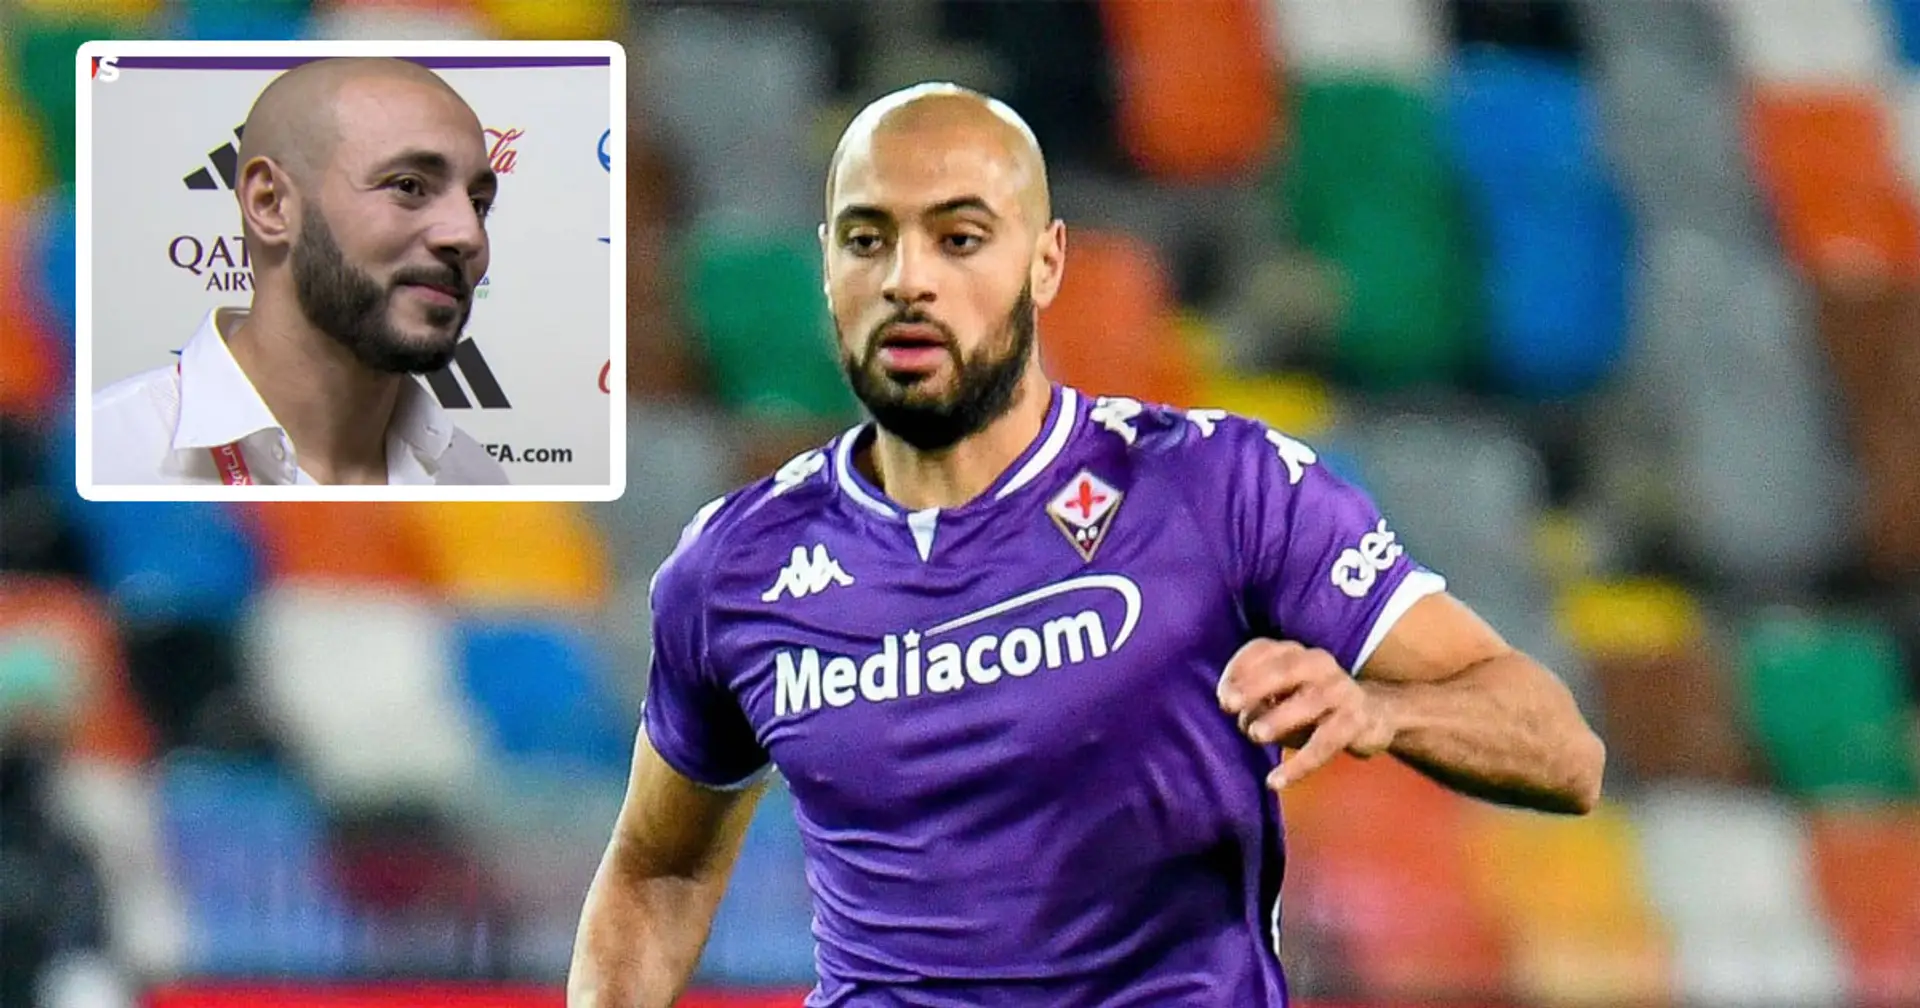 "Fiorentina a dit non'': le frère d'Amrabat explique pourquoi le transfert au Barça n'a pas eu lieu cet hiver